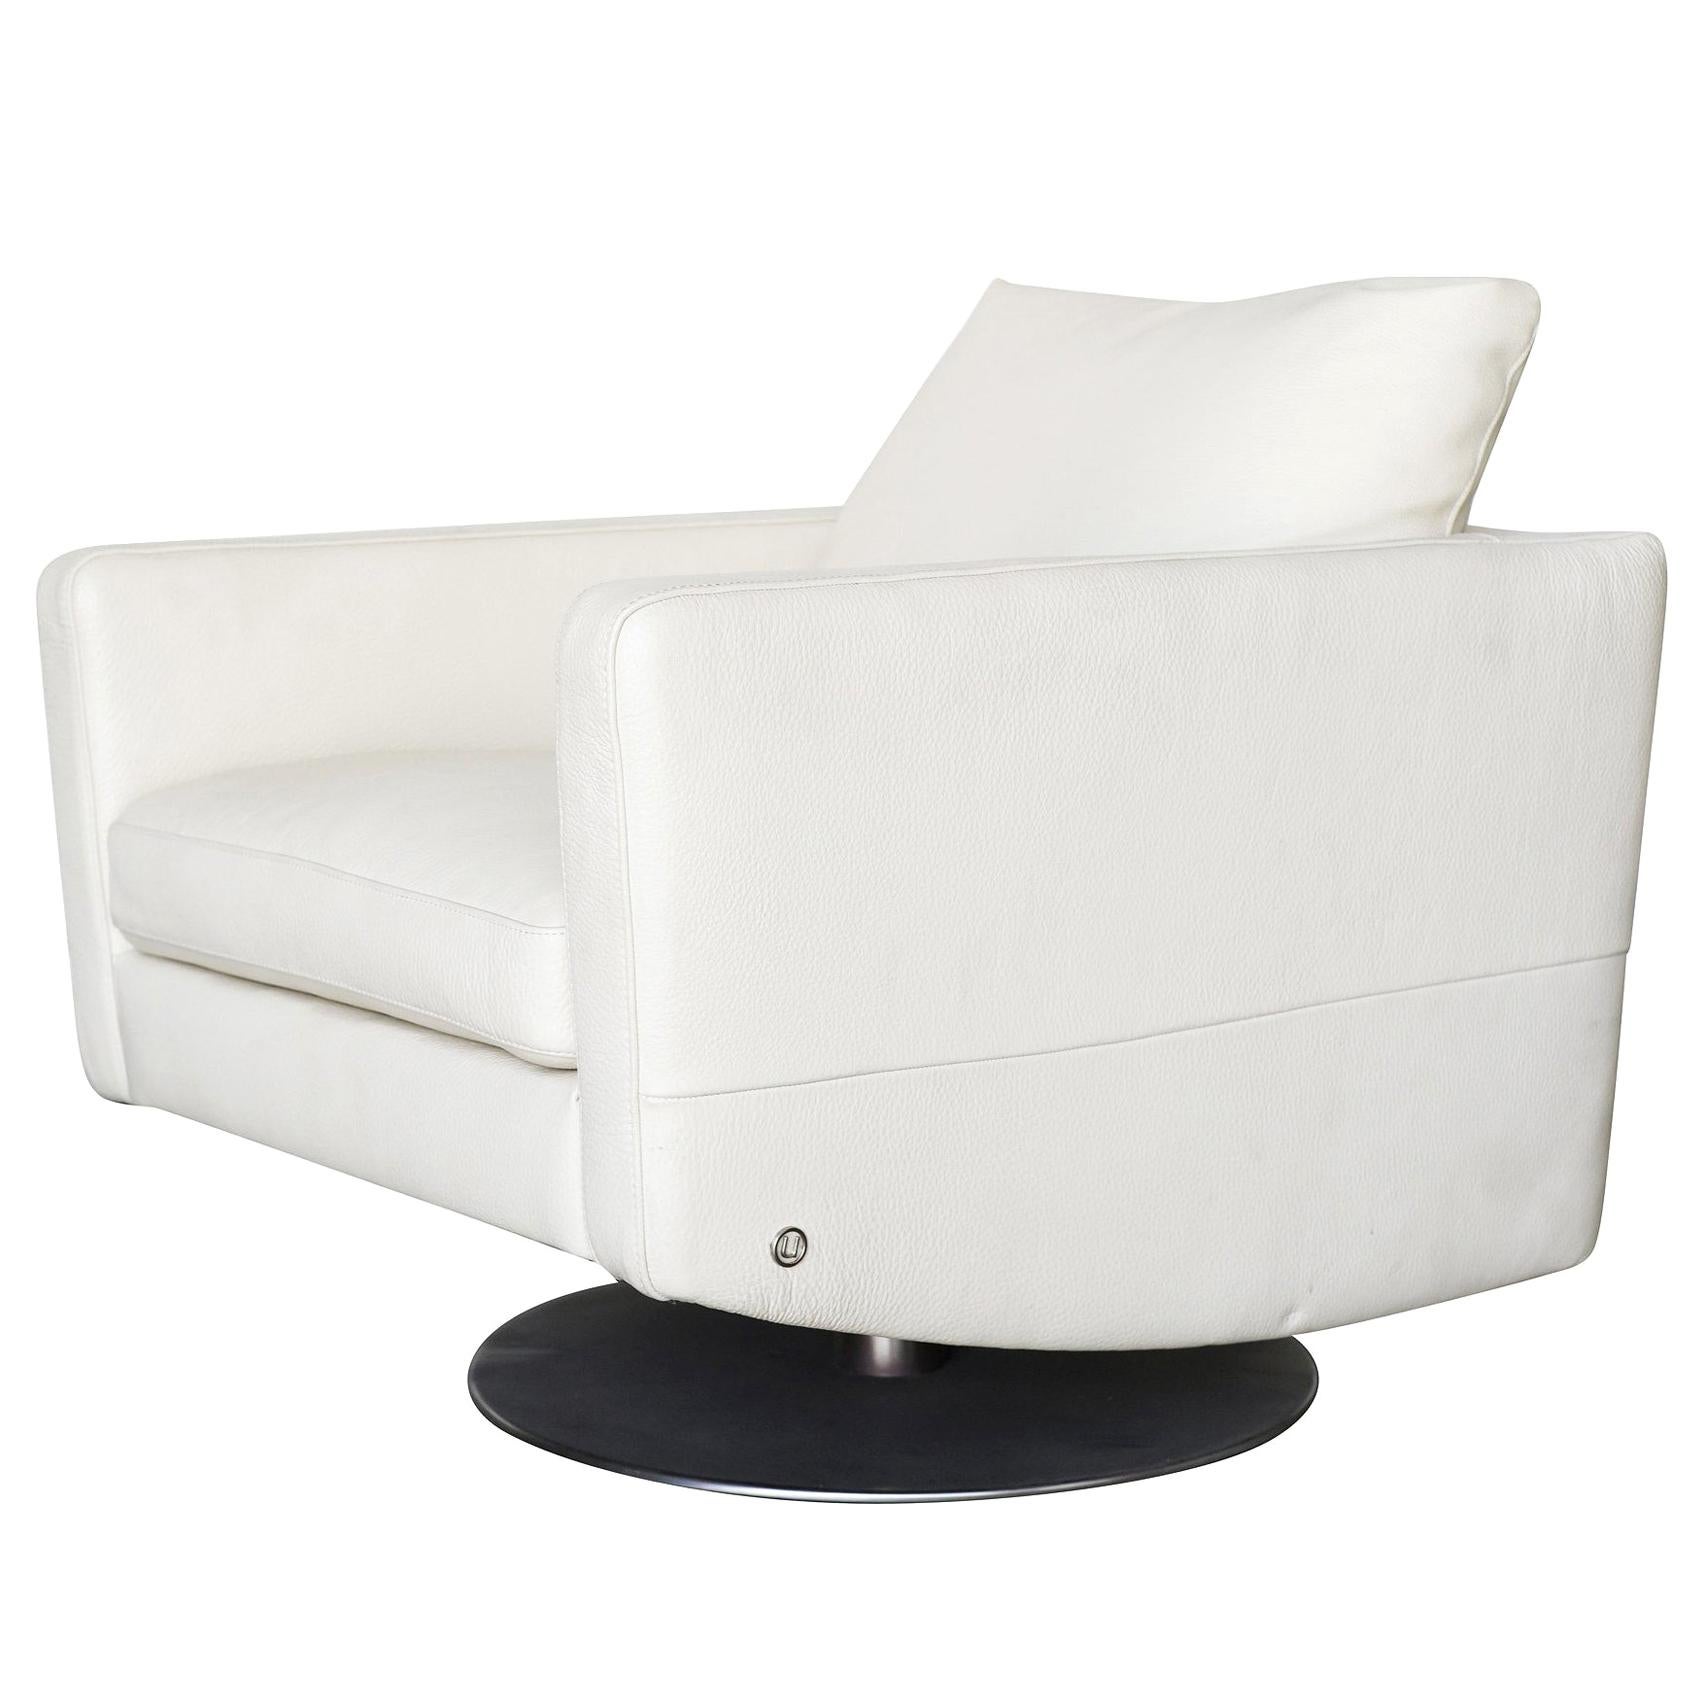 Chaise longue pivotante blanche moderniste avec base en acier brossé